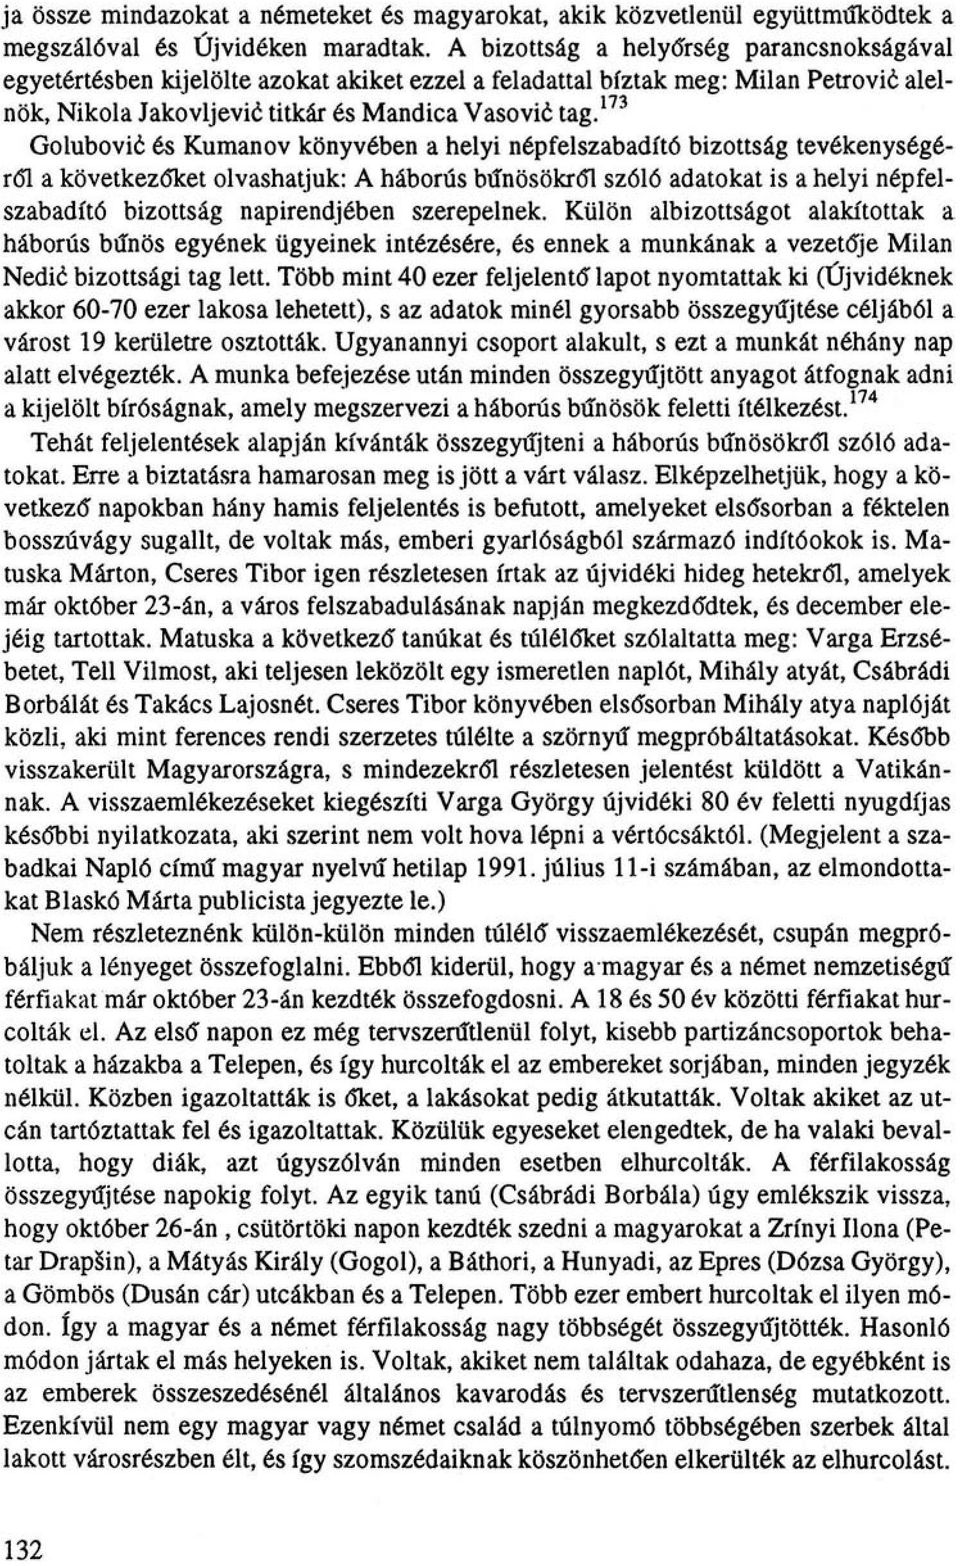 173 Golubović és Kumanov könyvében a helyi népfelszabadító bizottság tevékenységéről a következőket olvashatjuk: A háborús bűnösökről szóló adatokat is a helyi népfelszabadító bizottság napirendjében